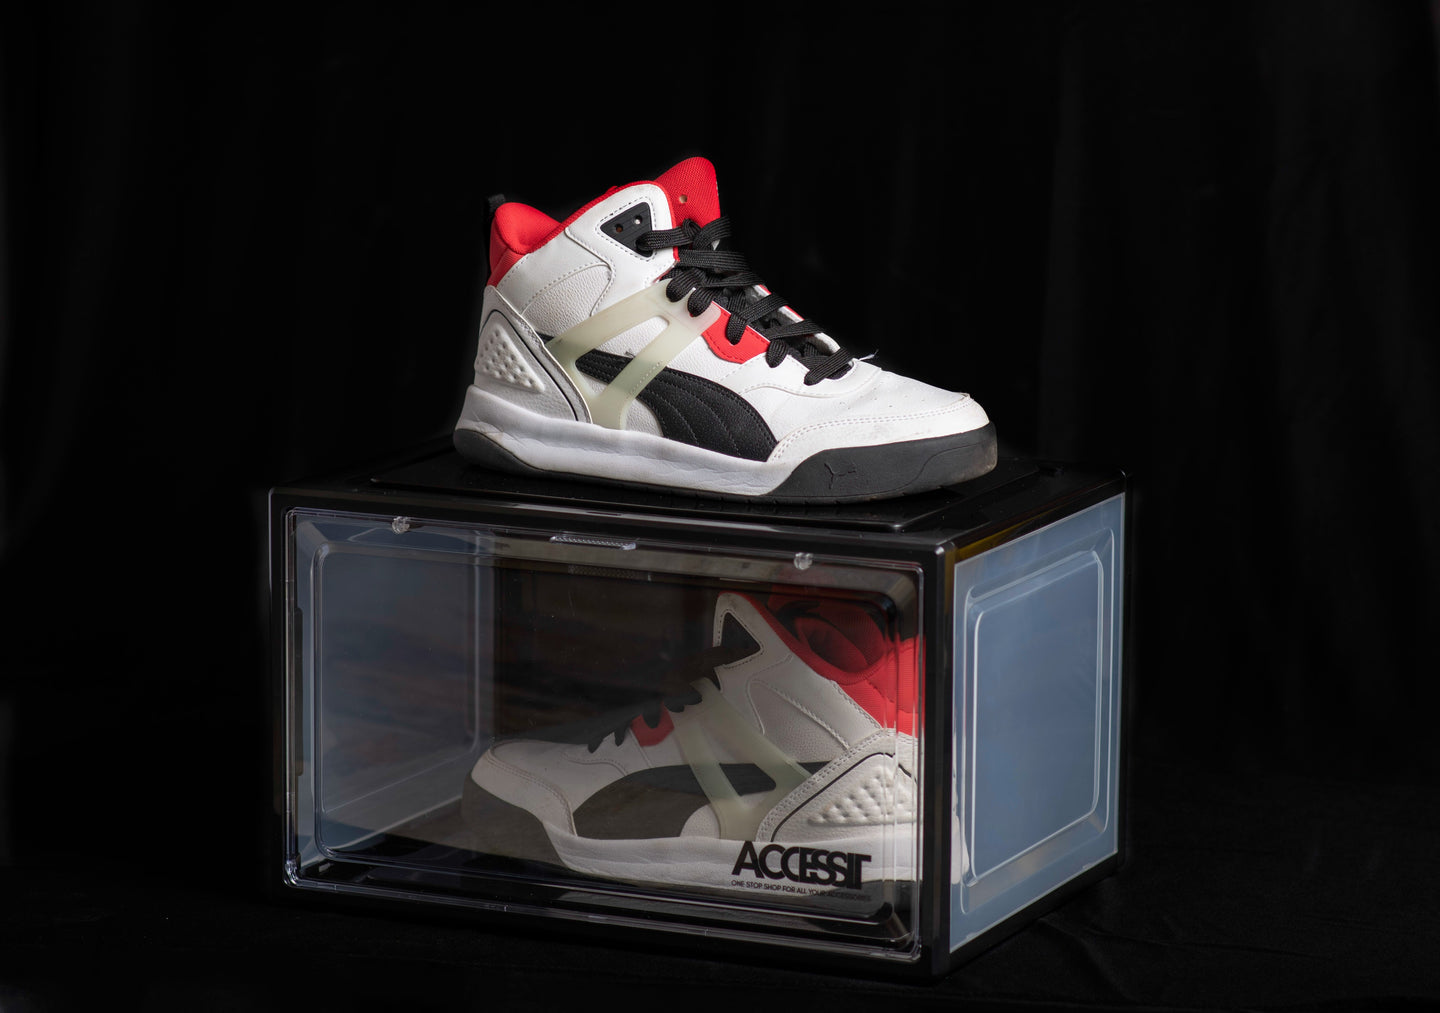 Heavy duty Sneaker box, sneaker crate, sneaker care accessories, shoe box, plastic shoe box,3 side view, sneaker crates,stackable sneaker box